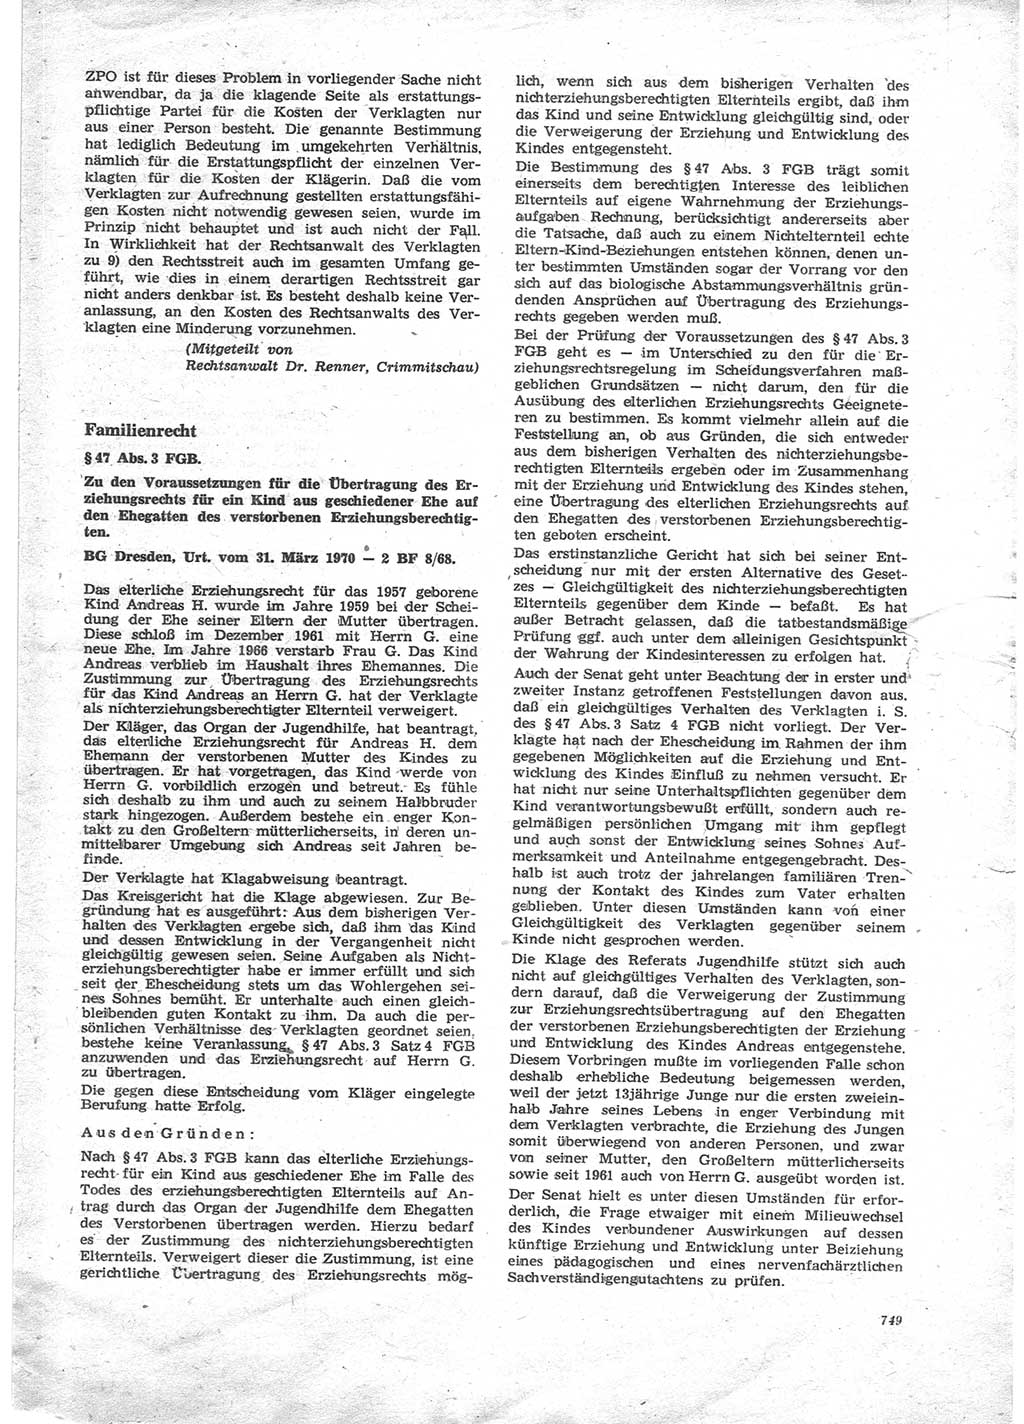 Neue Justiz (NJ), Zeitschrift für Recht und Rechtswissenschaft [Deutsche Demokratische Republik (DDR)], 24. Jahrgang 1970, Seite 749 (NJ DDR 1970, S. 749)